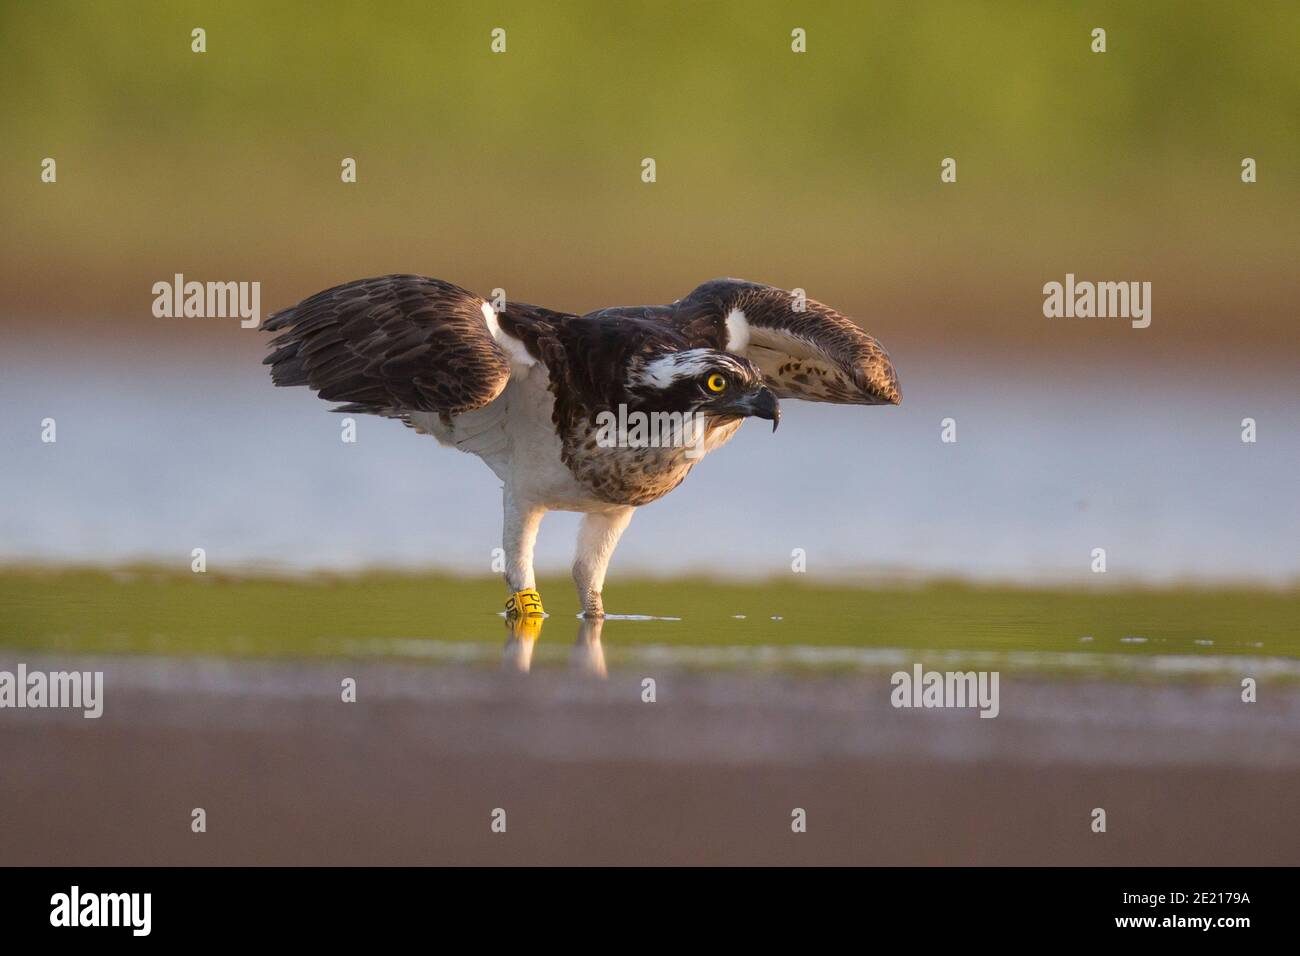 Osprey (Pandion haliatus) chasse au poisson dans un étang d'eau. Cet oiseau de proie mangeant des poissons se trouve sur tous les continents, à l'exception de l'Antarctique. Son régime contre Banque D'Images